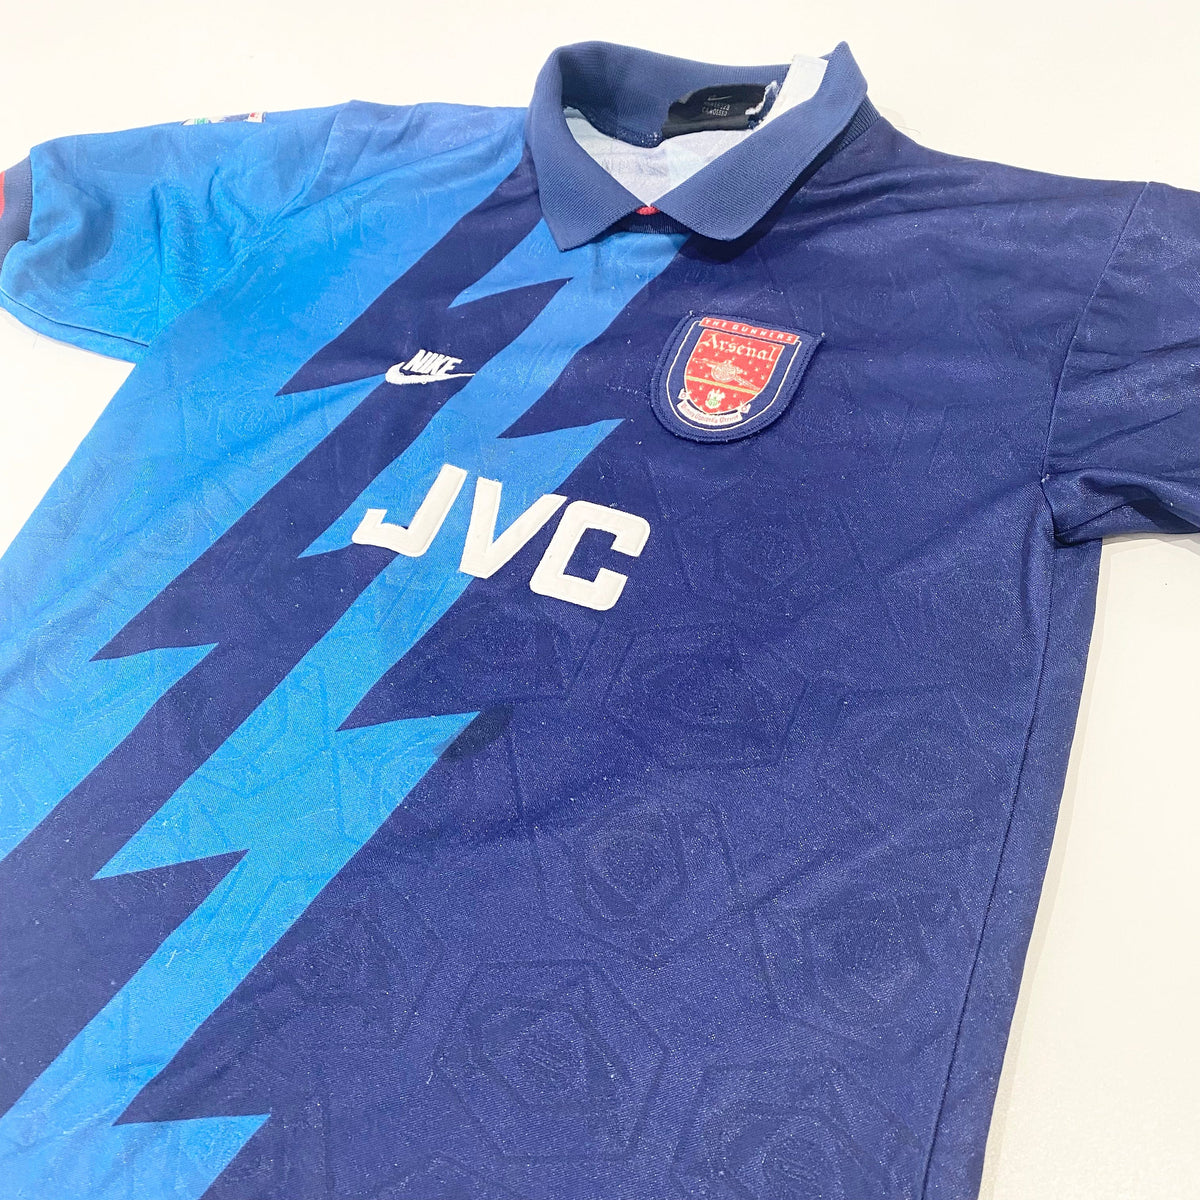 Arsenal 95/96 JVC Away Kit